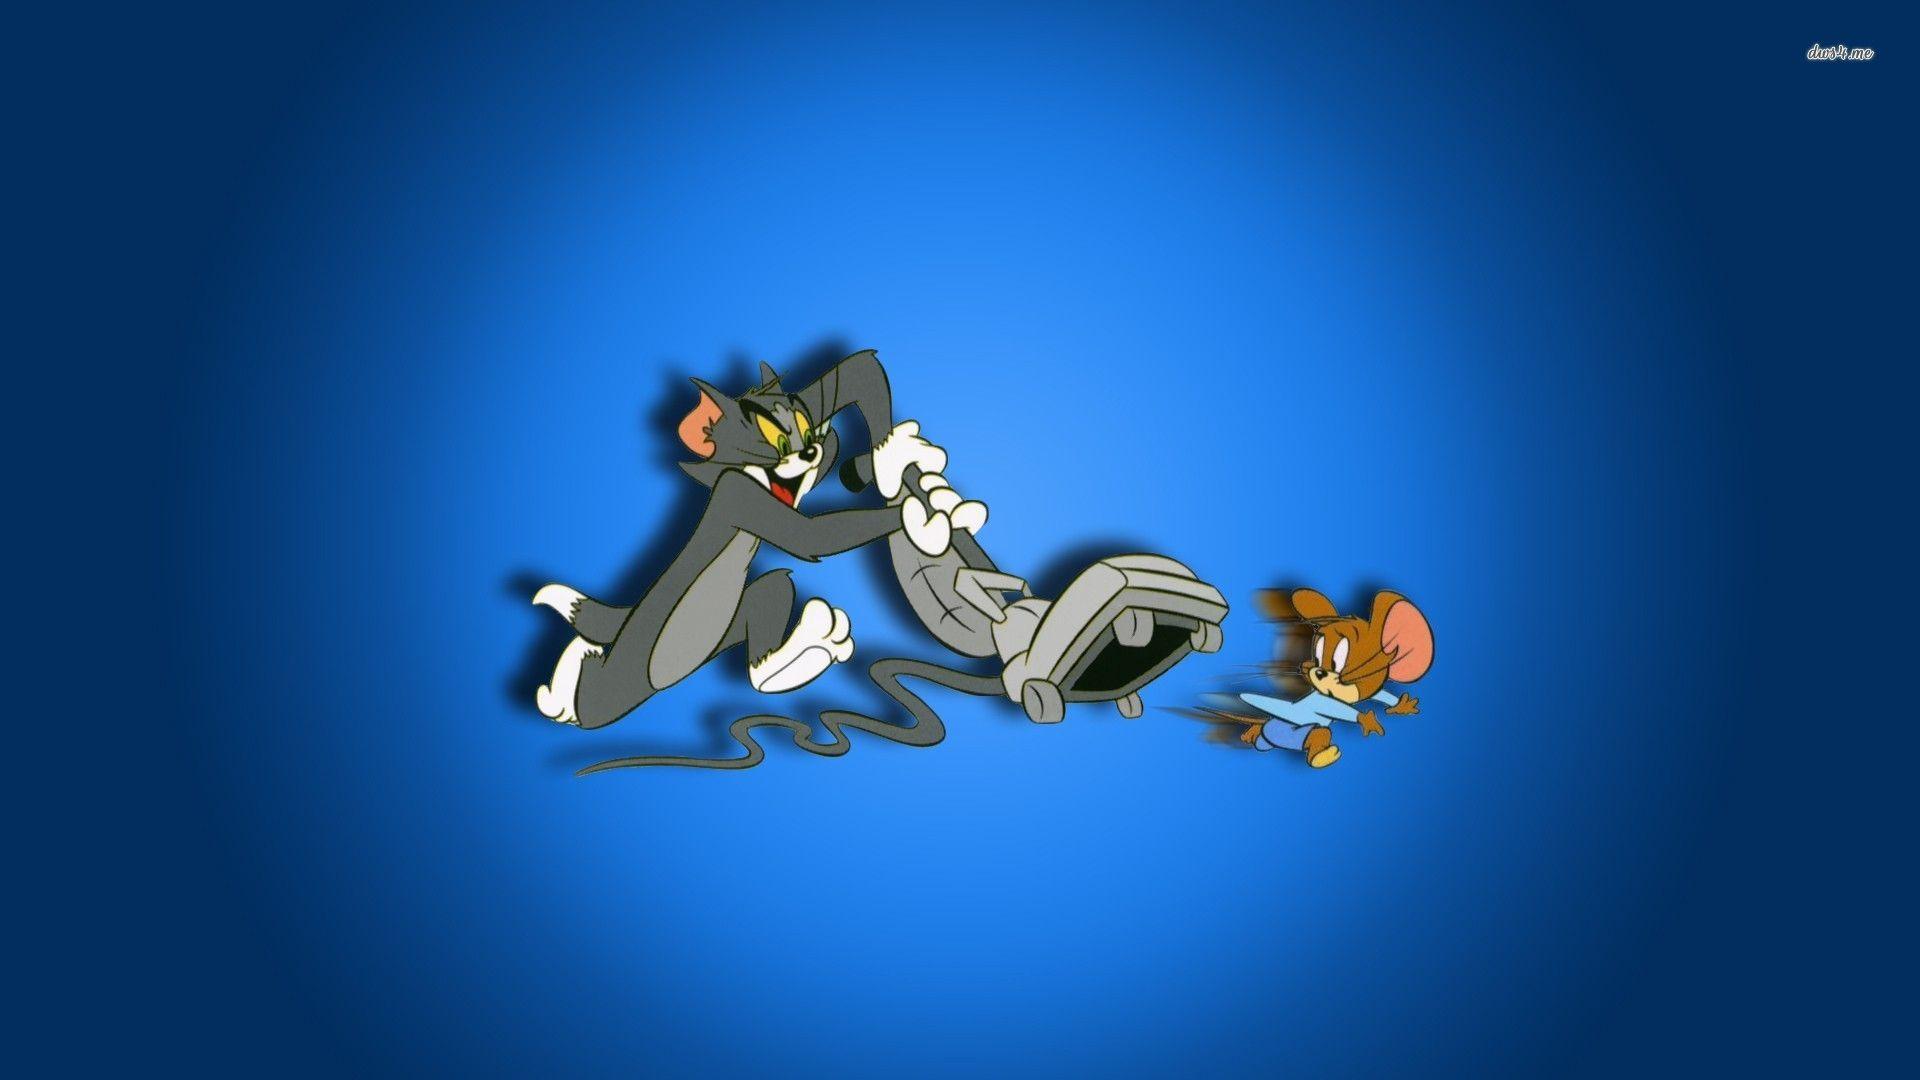 1920x1080 Tom và Jerry hình nền - Hình nền hoạt hình